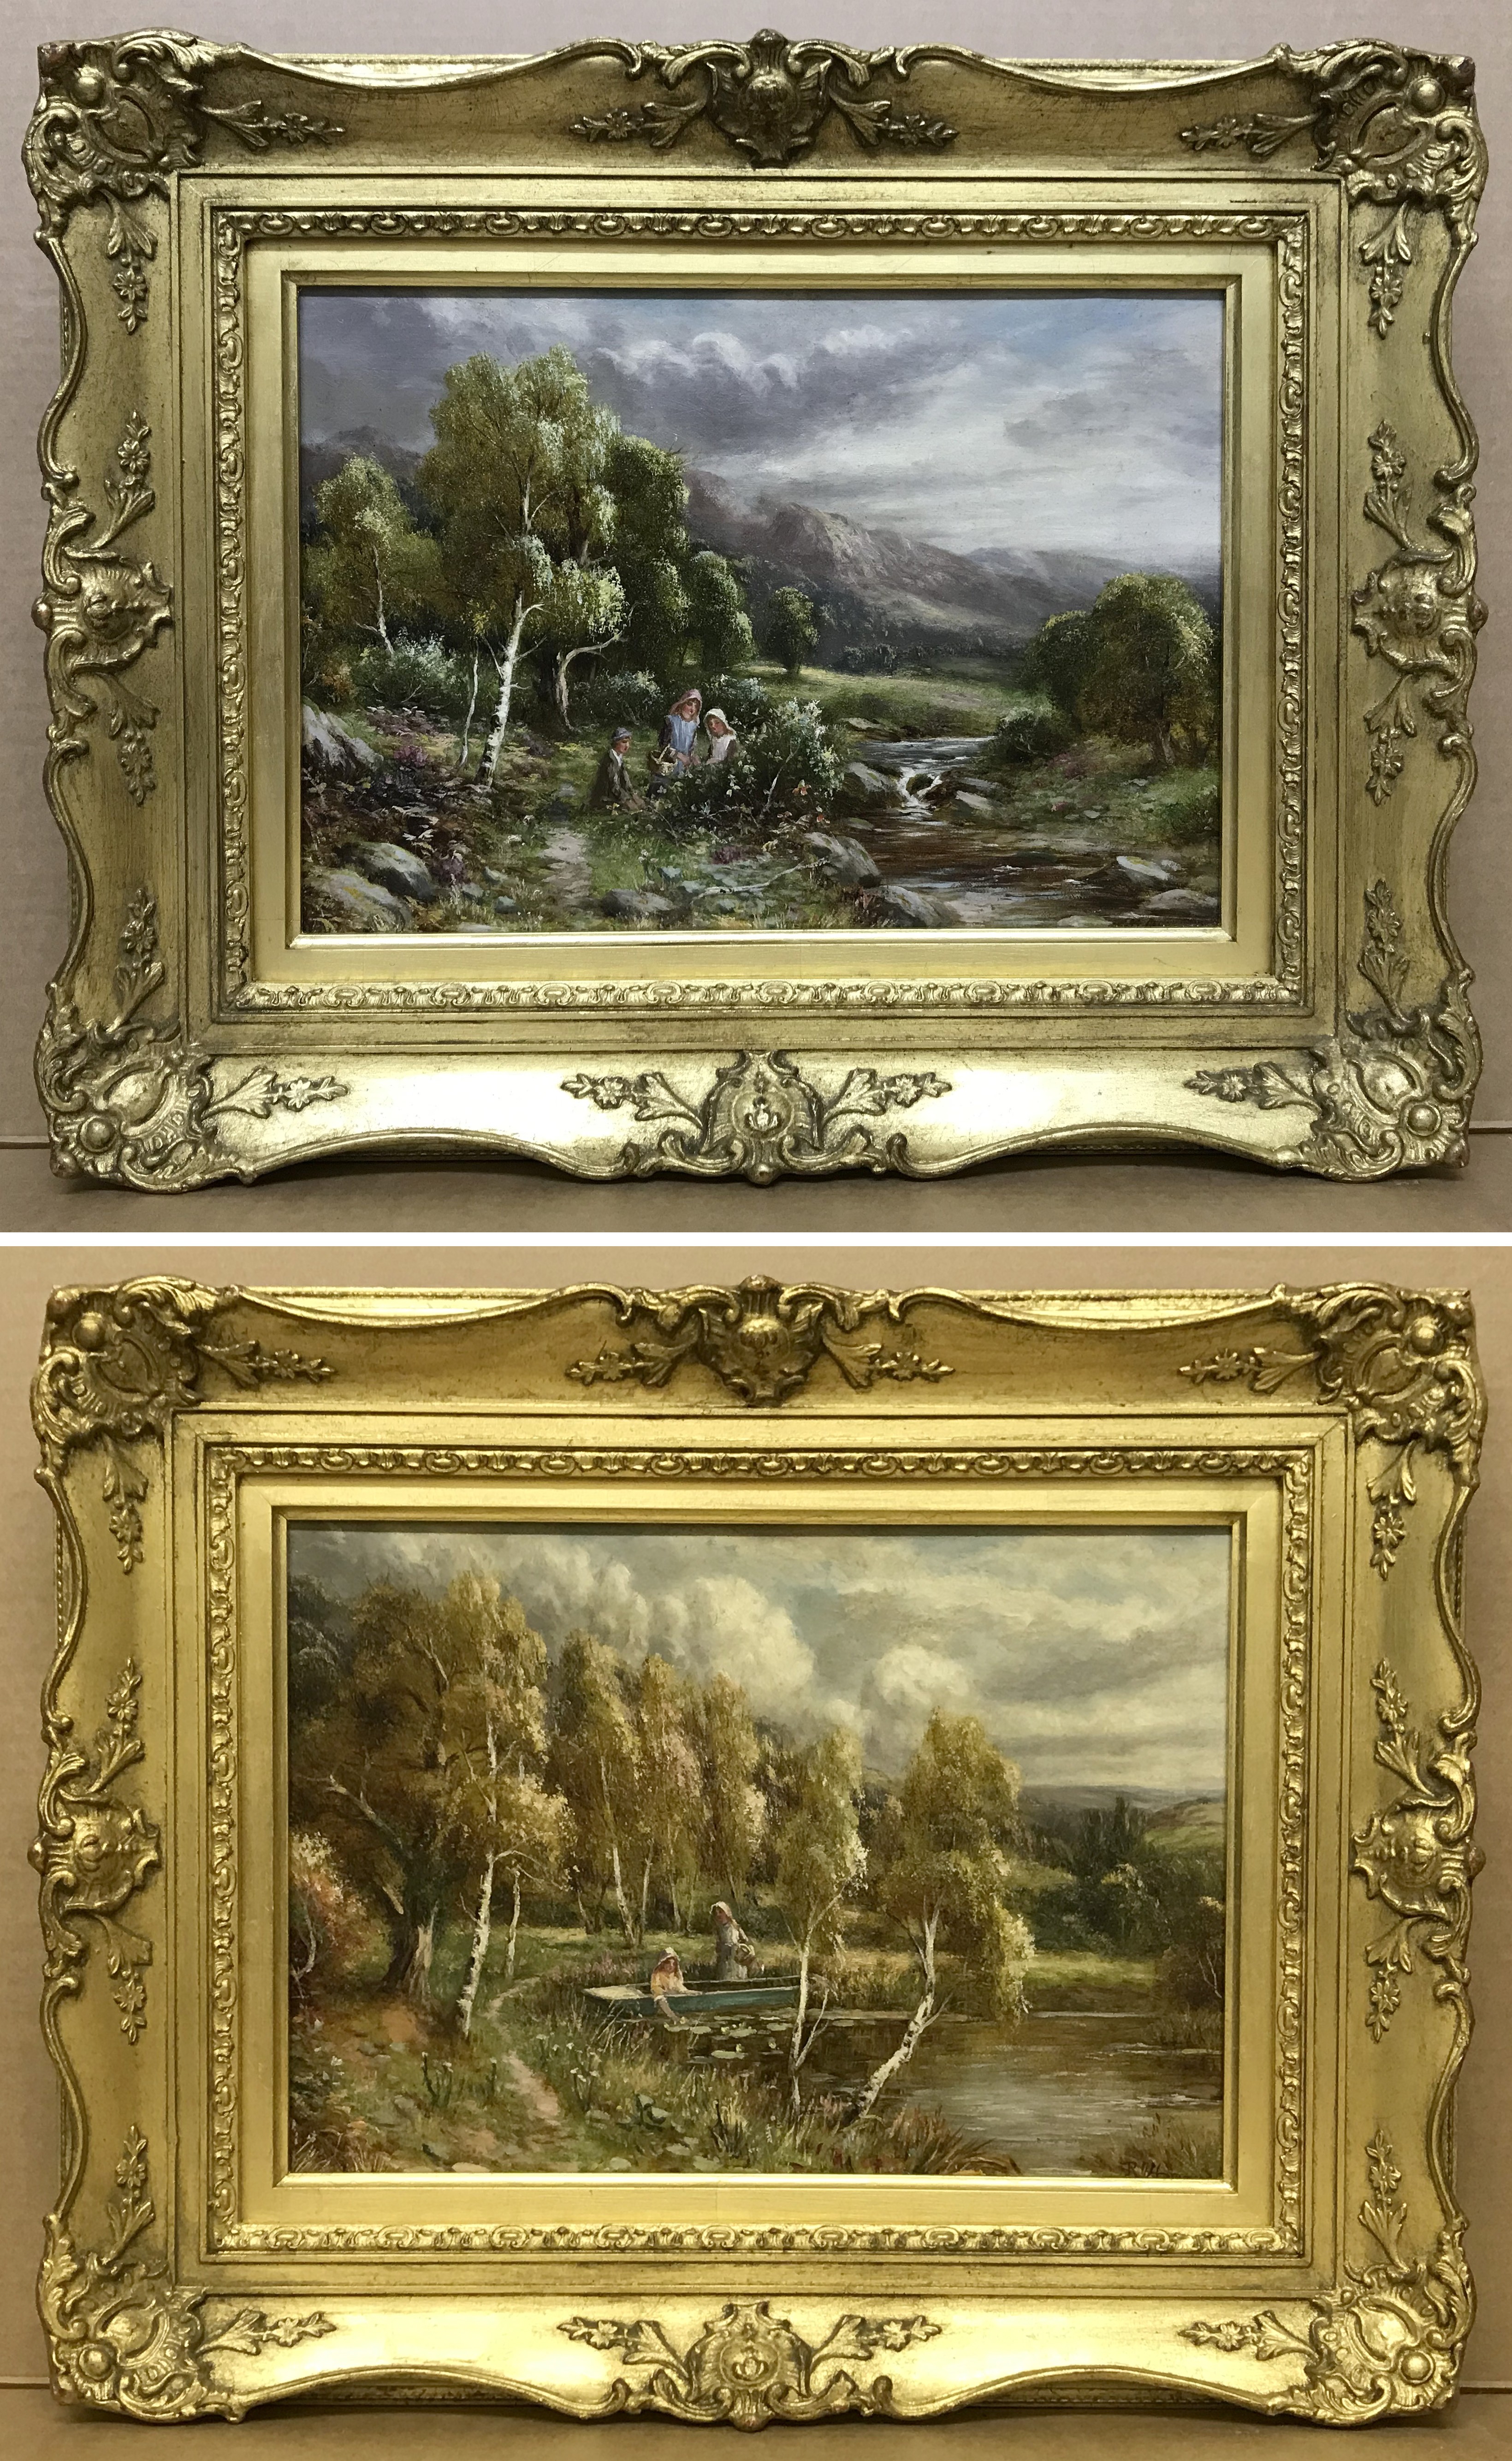 Robert John Hammond 1882-1911. English. Pair of oils on canvas.